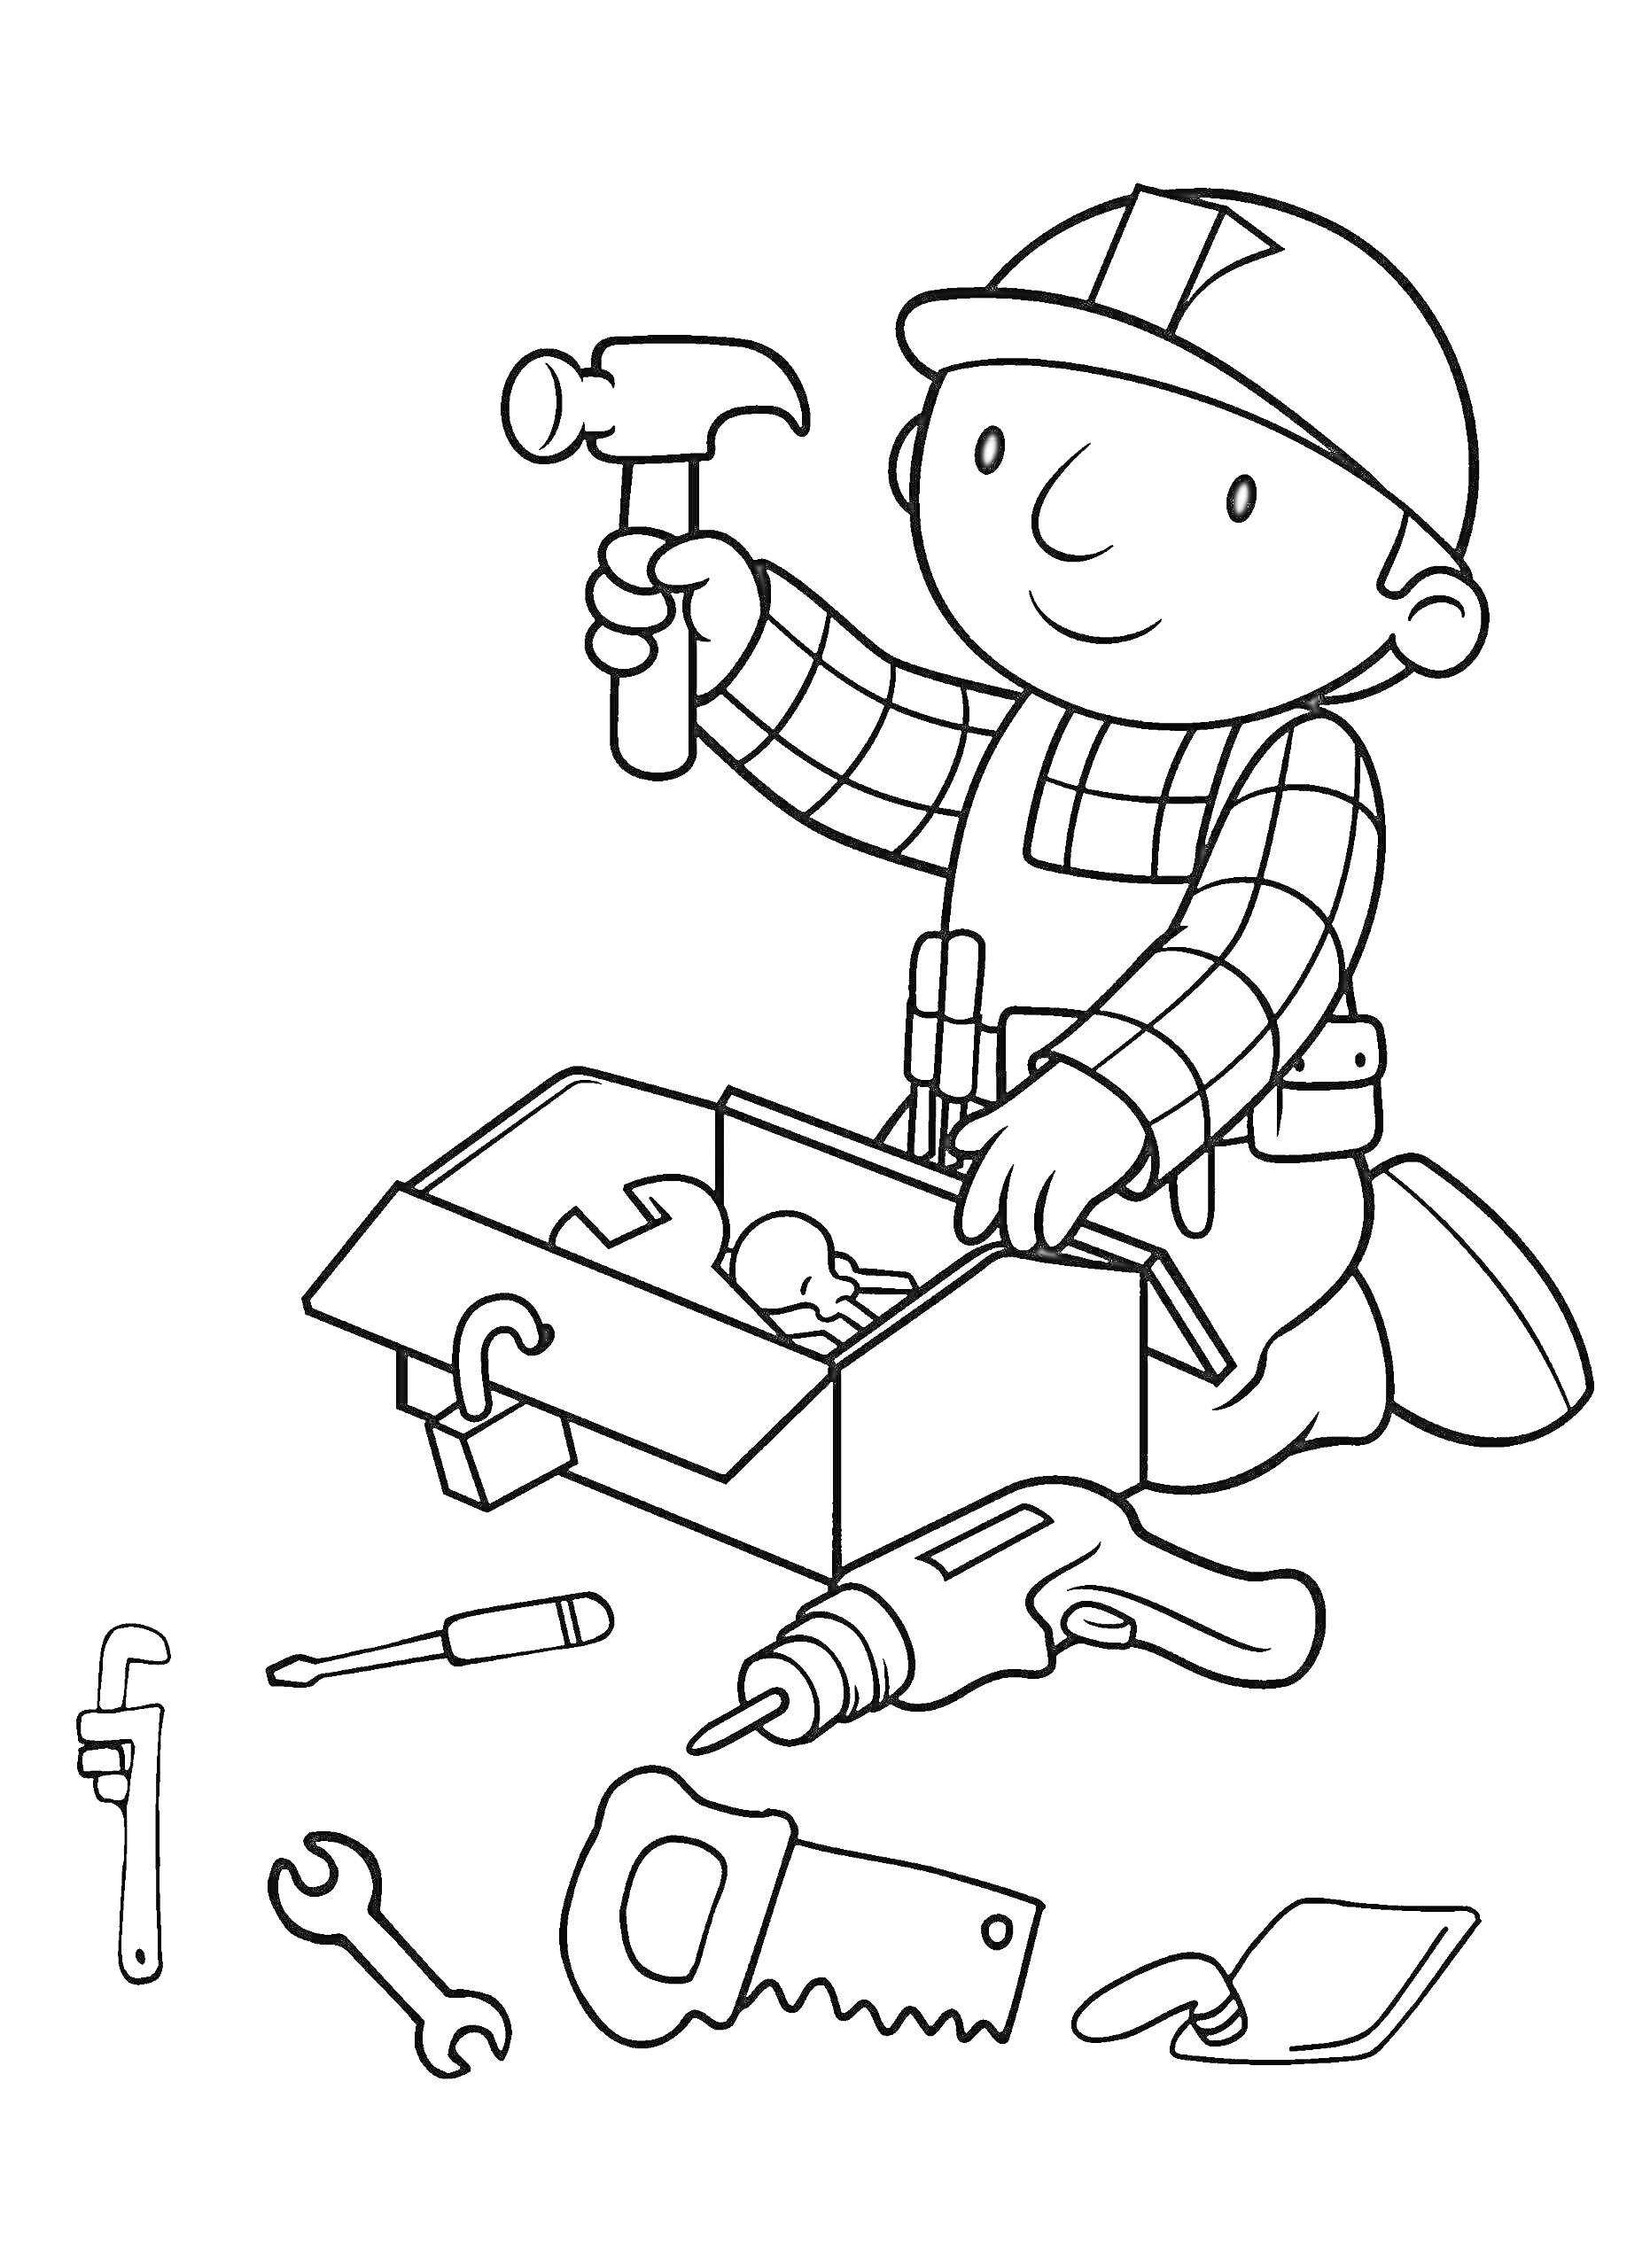 Раскраска Боб строитель с молотком и ящиком для инструментов, вокруг разбросаны различные инструменты